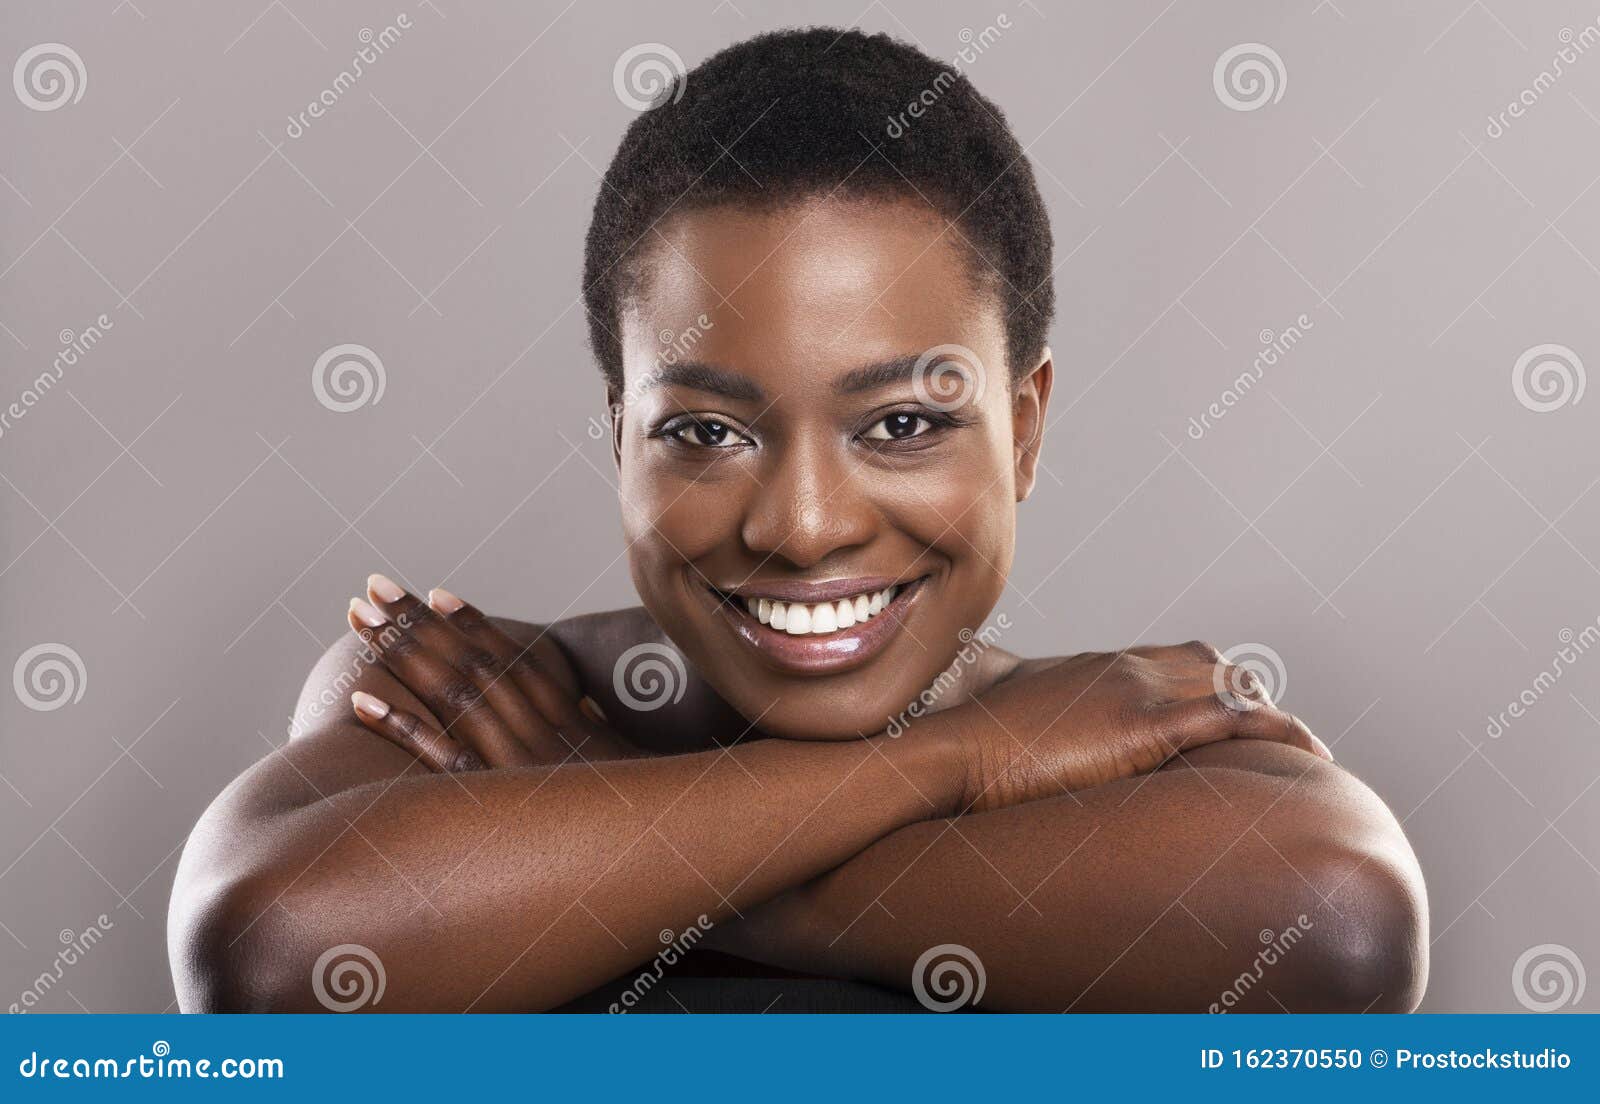 Gorgeous Black Women Nude